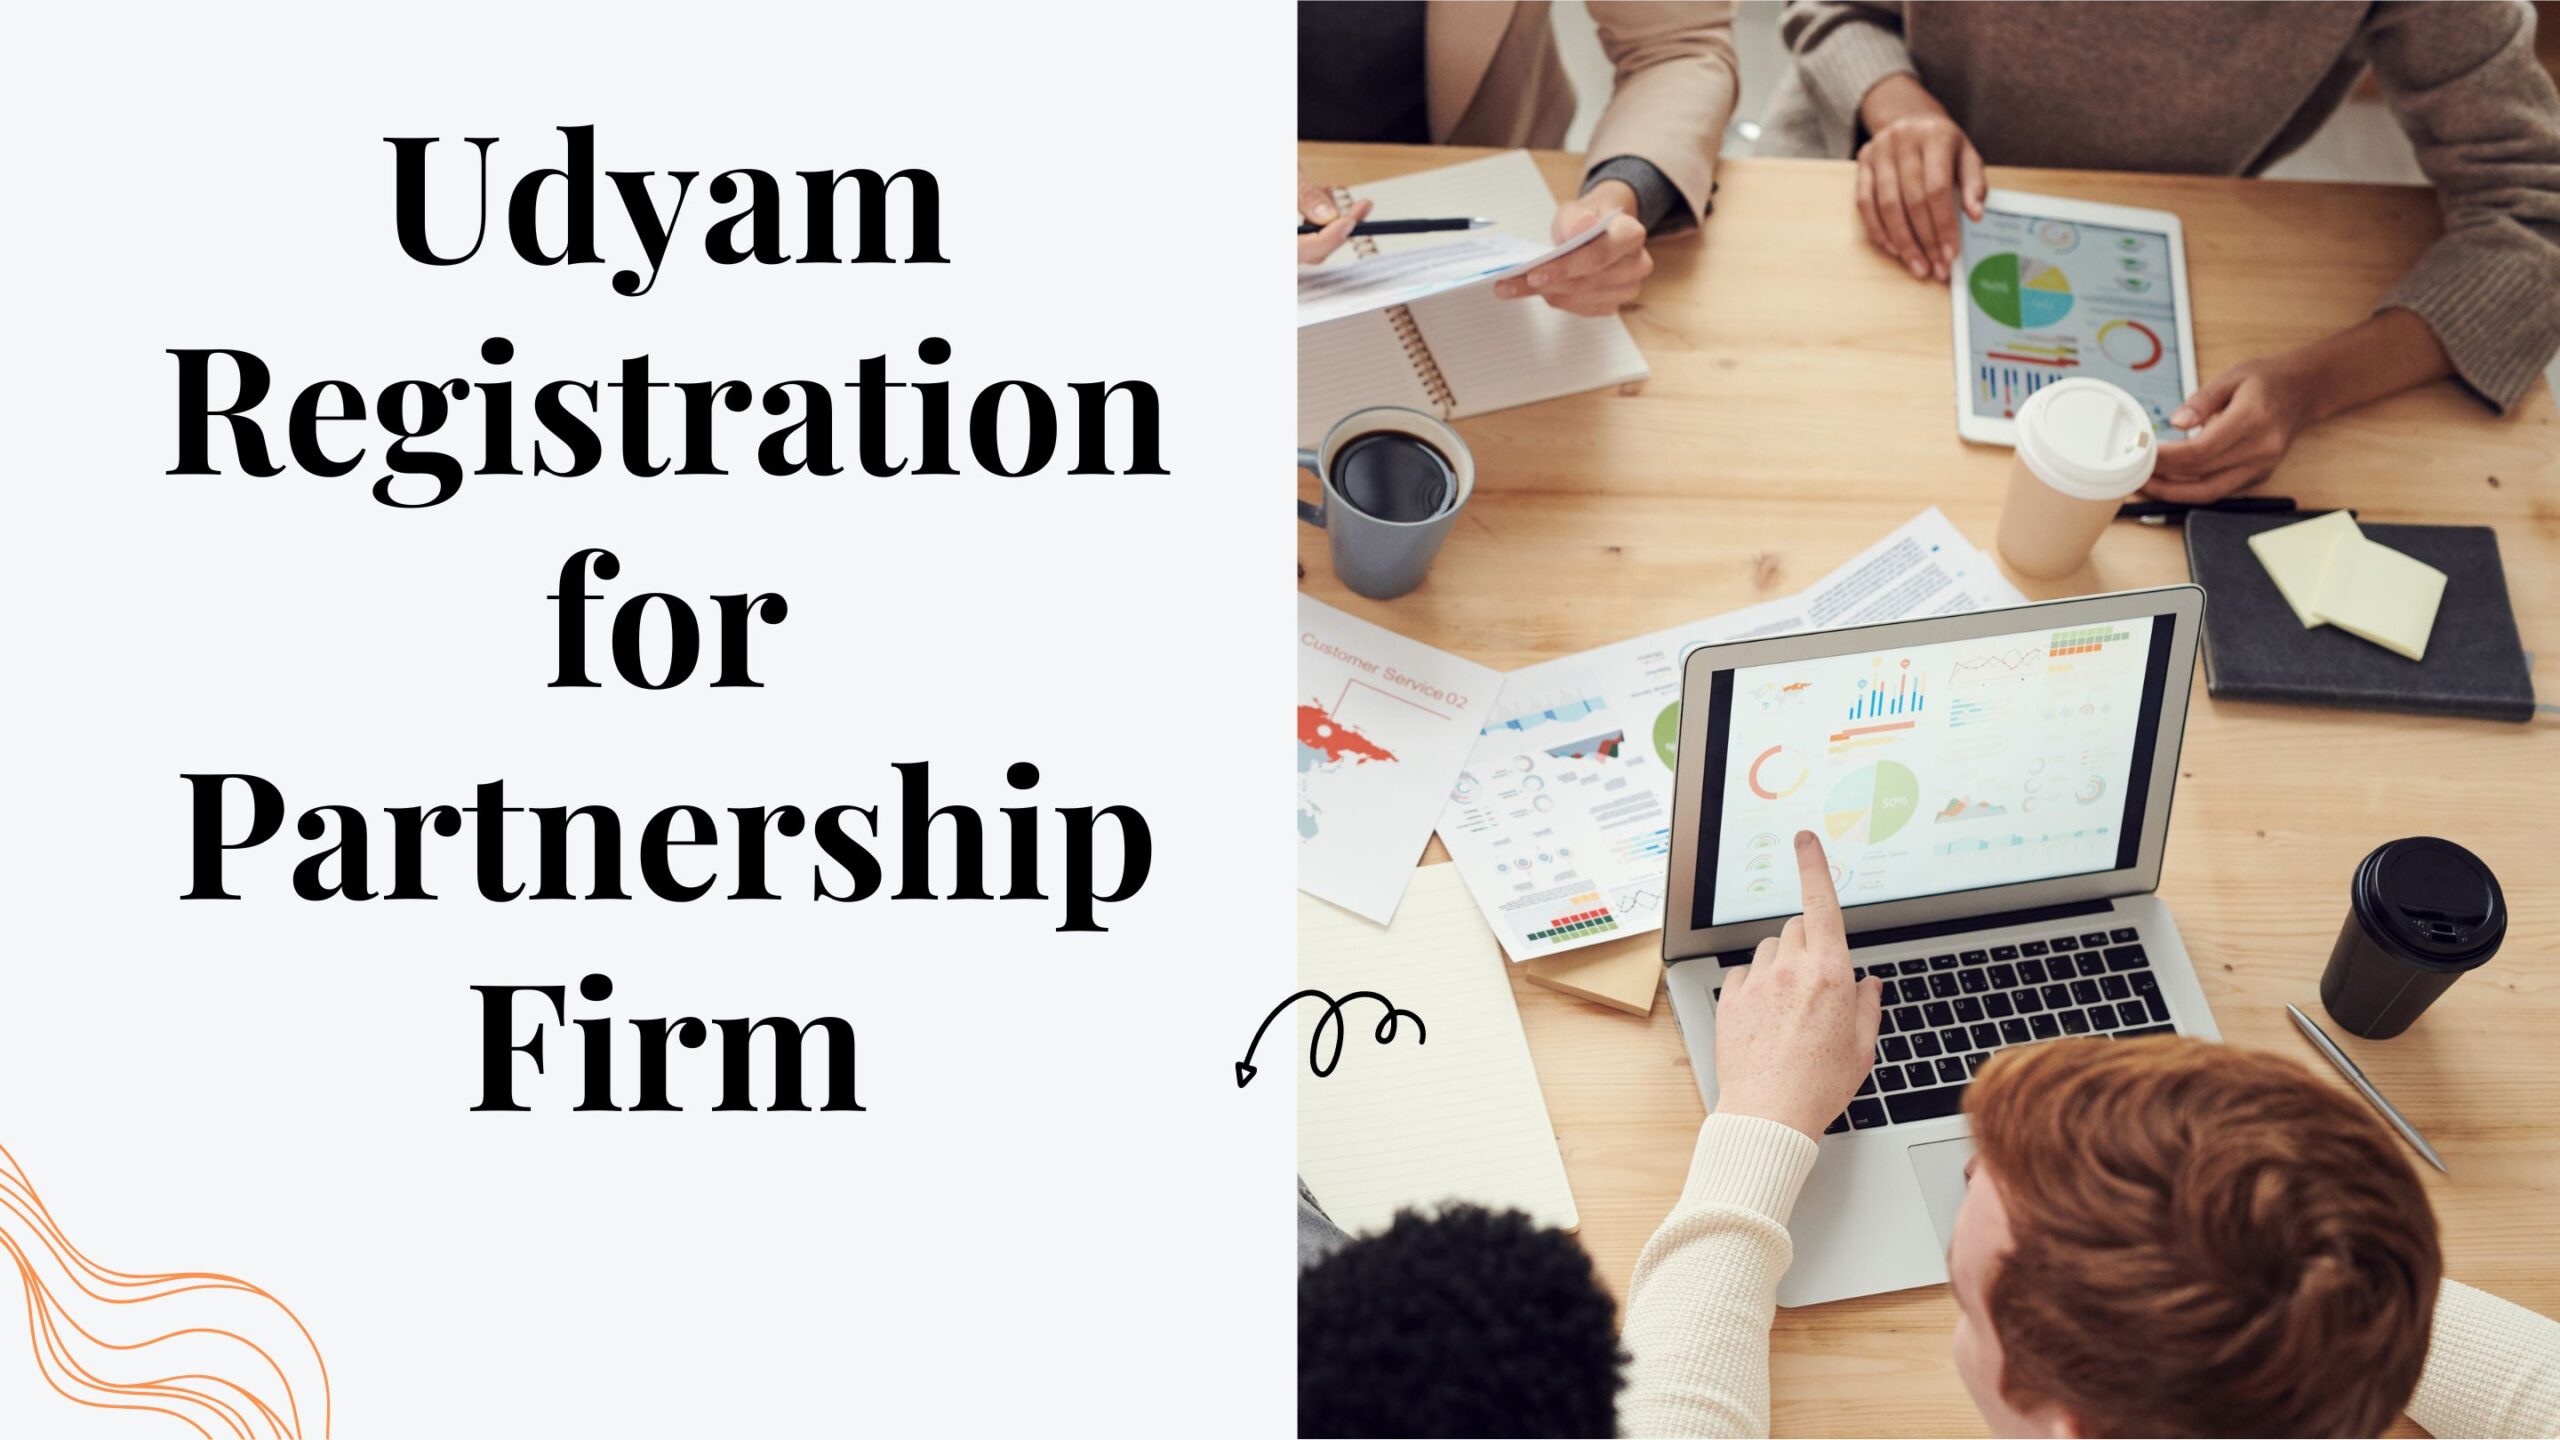 Udyam Registration for Partnership Firm